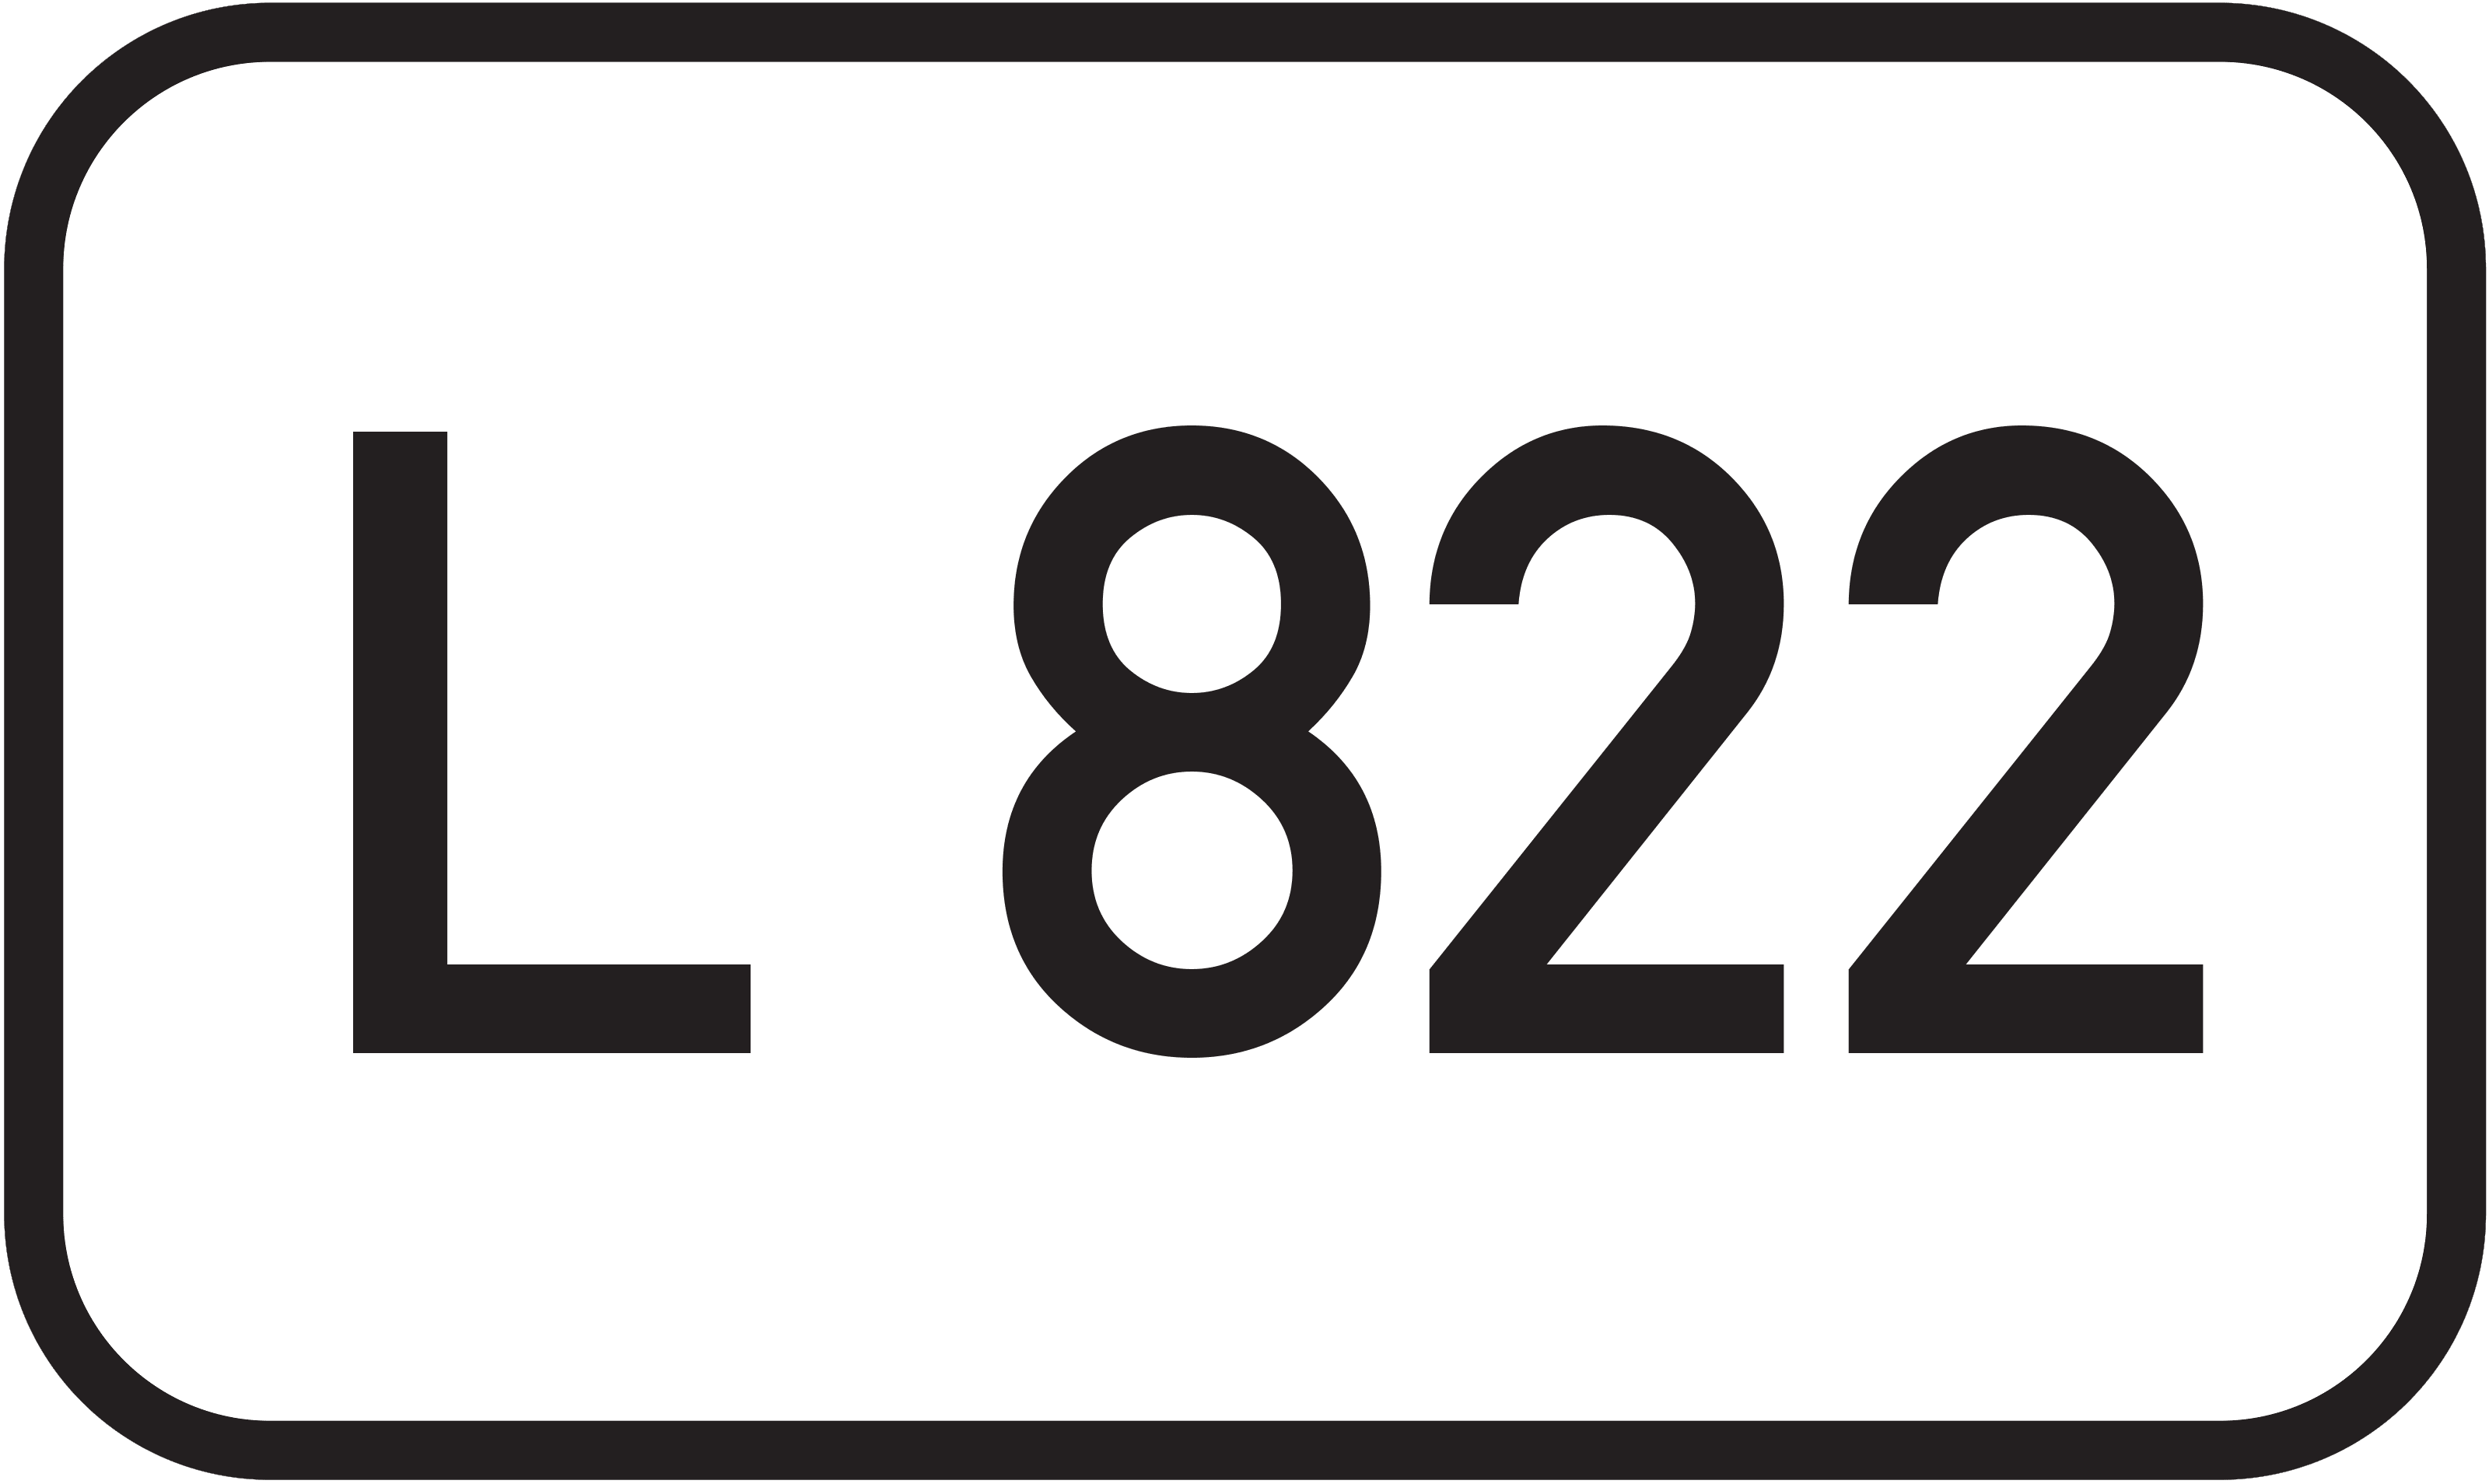 Landesstraße L 822